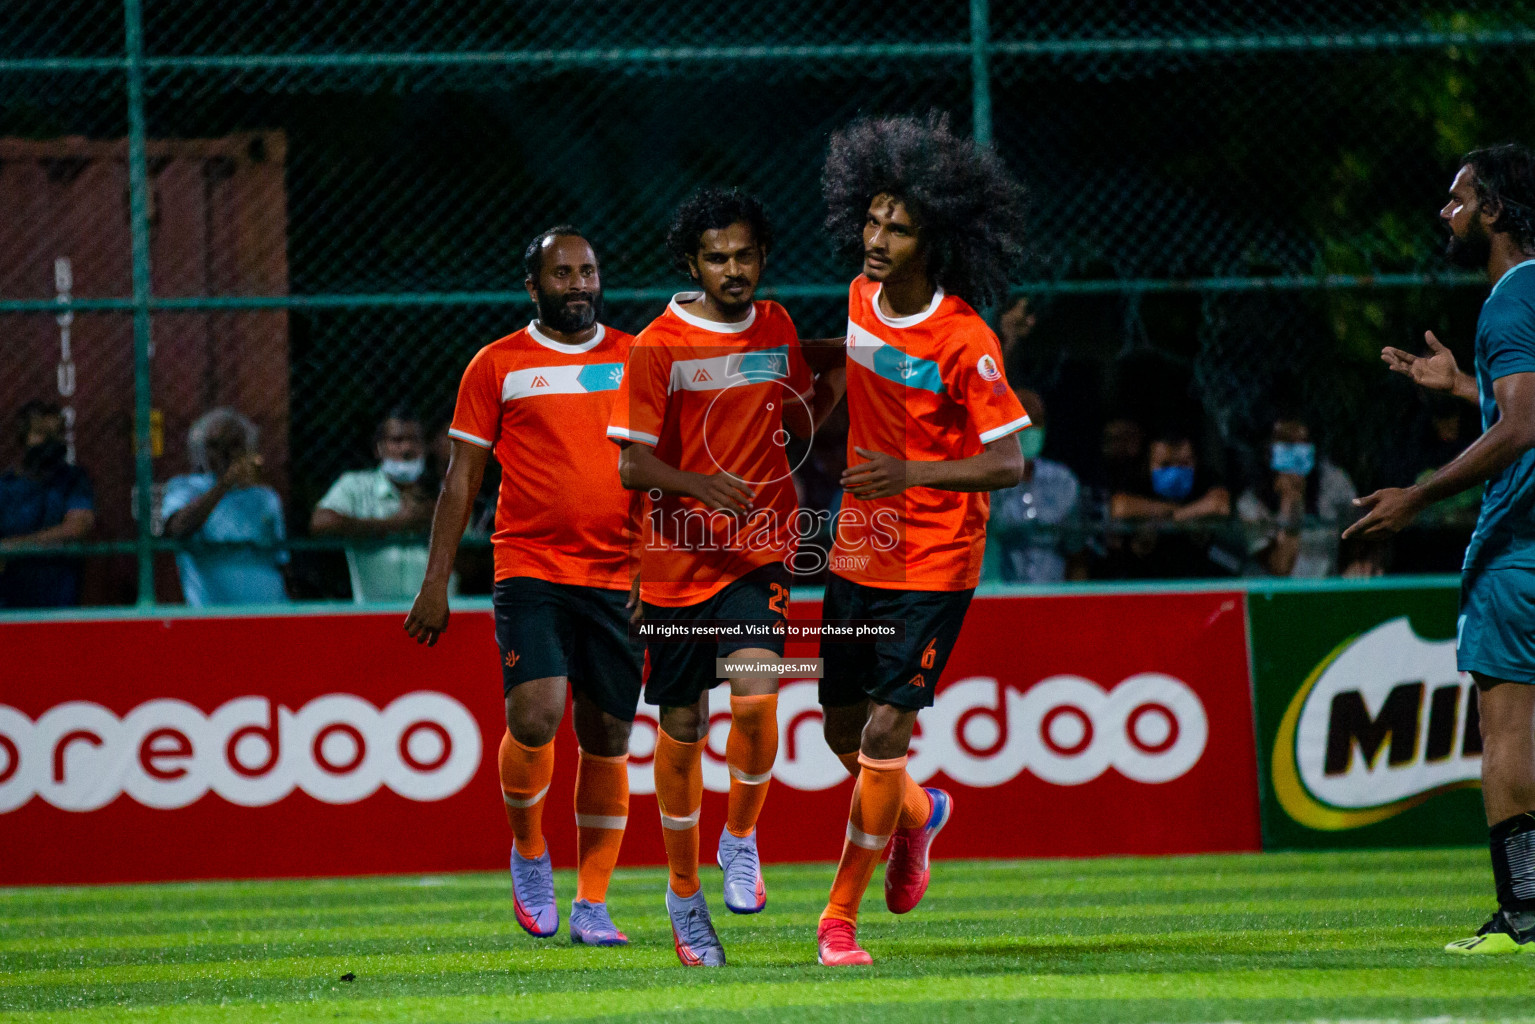 Club Maldives Day 6 - 26th November 2021, at Hulhumale. Photos by Suadh Abdul Sattar and Nasam / Images.mv